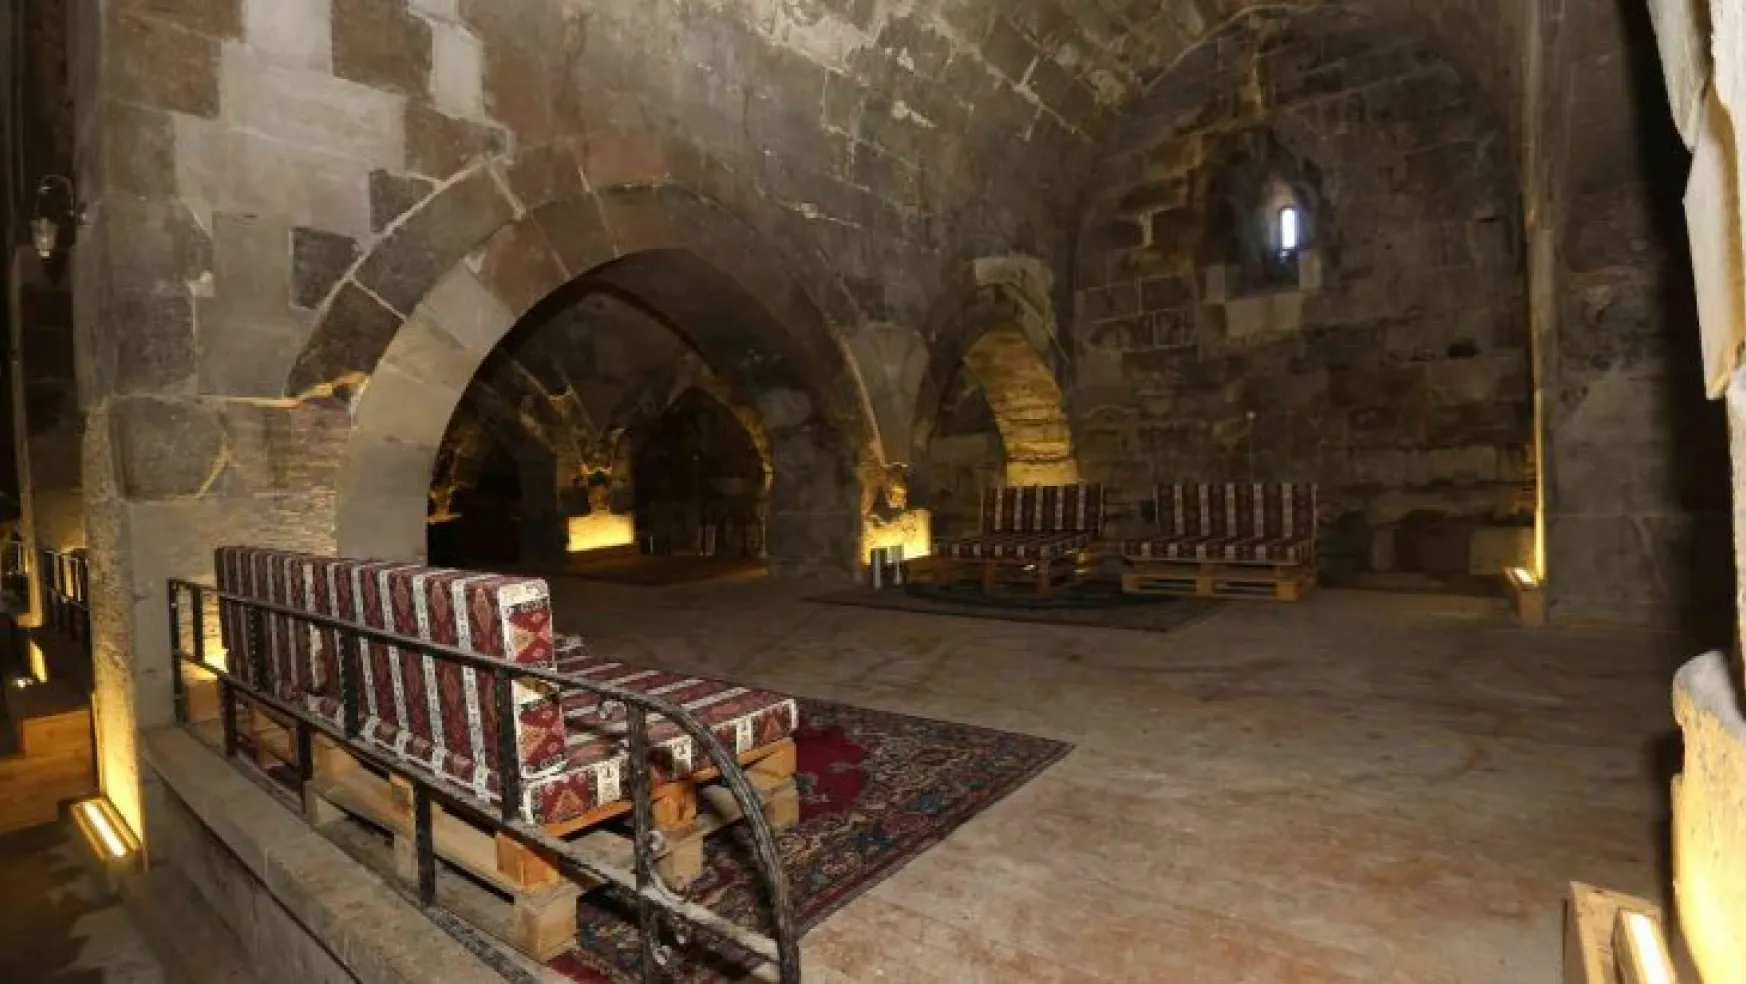 1240 yılında Selçuklu veziri tarafından yaptırılan Karatay Hanı'nda inceleme